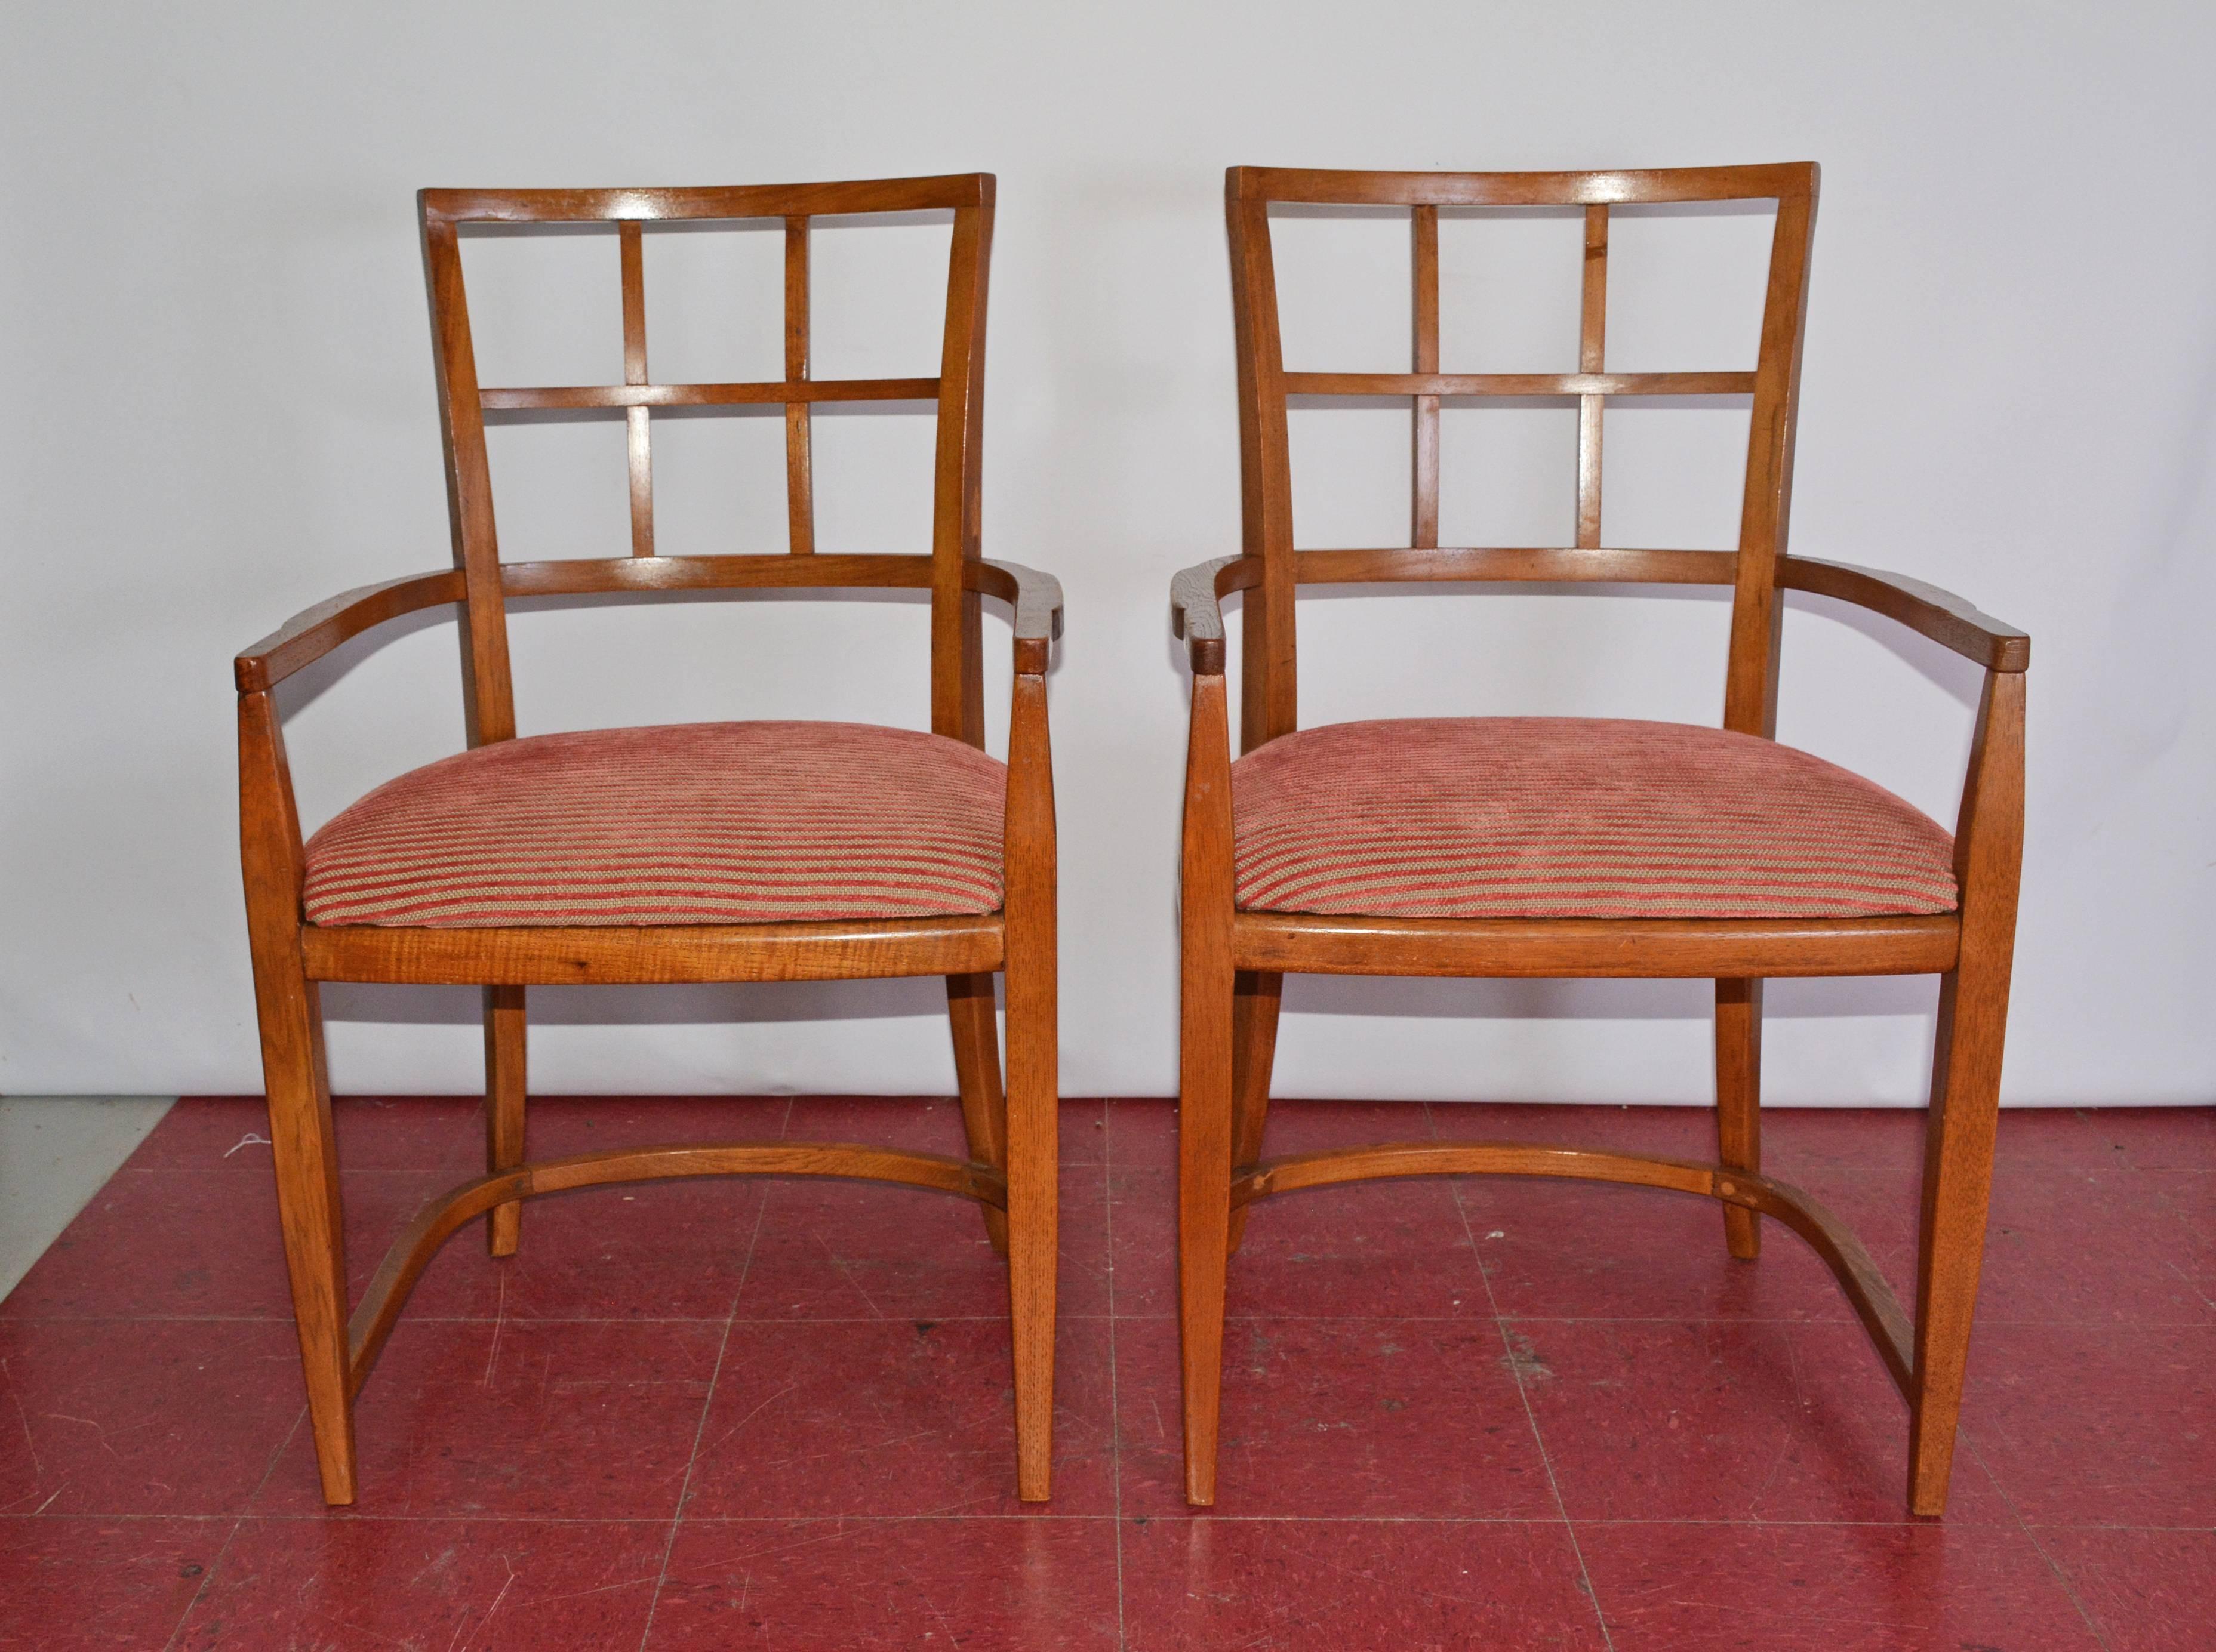 Das Paar Art Deco/Mid-Century Modern-Esszimmerstühle hat abgerundete Beinrahmen und Rückenlehnen. Die Sitze sind neu gepolstert und mit gerippten roten und hellbraunen Streifen versehen. Sie eignen sich auch hervorragend als Bürostühle,